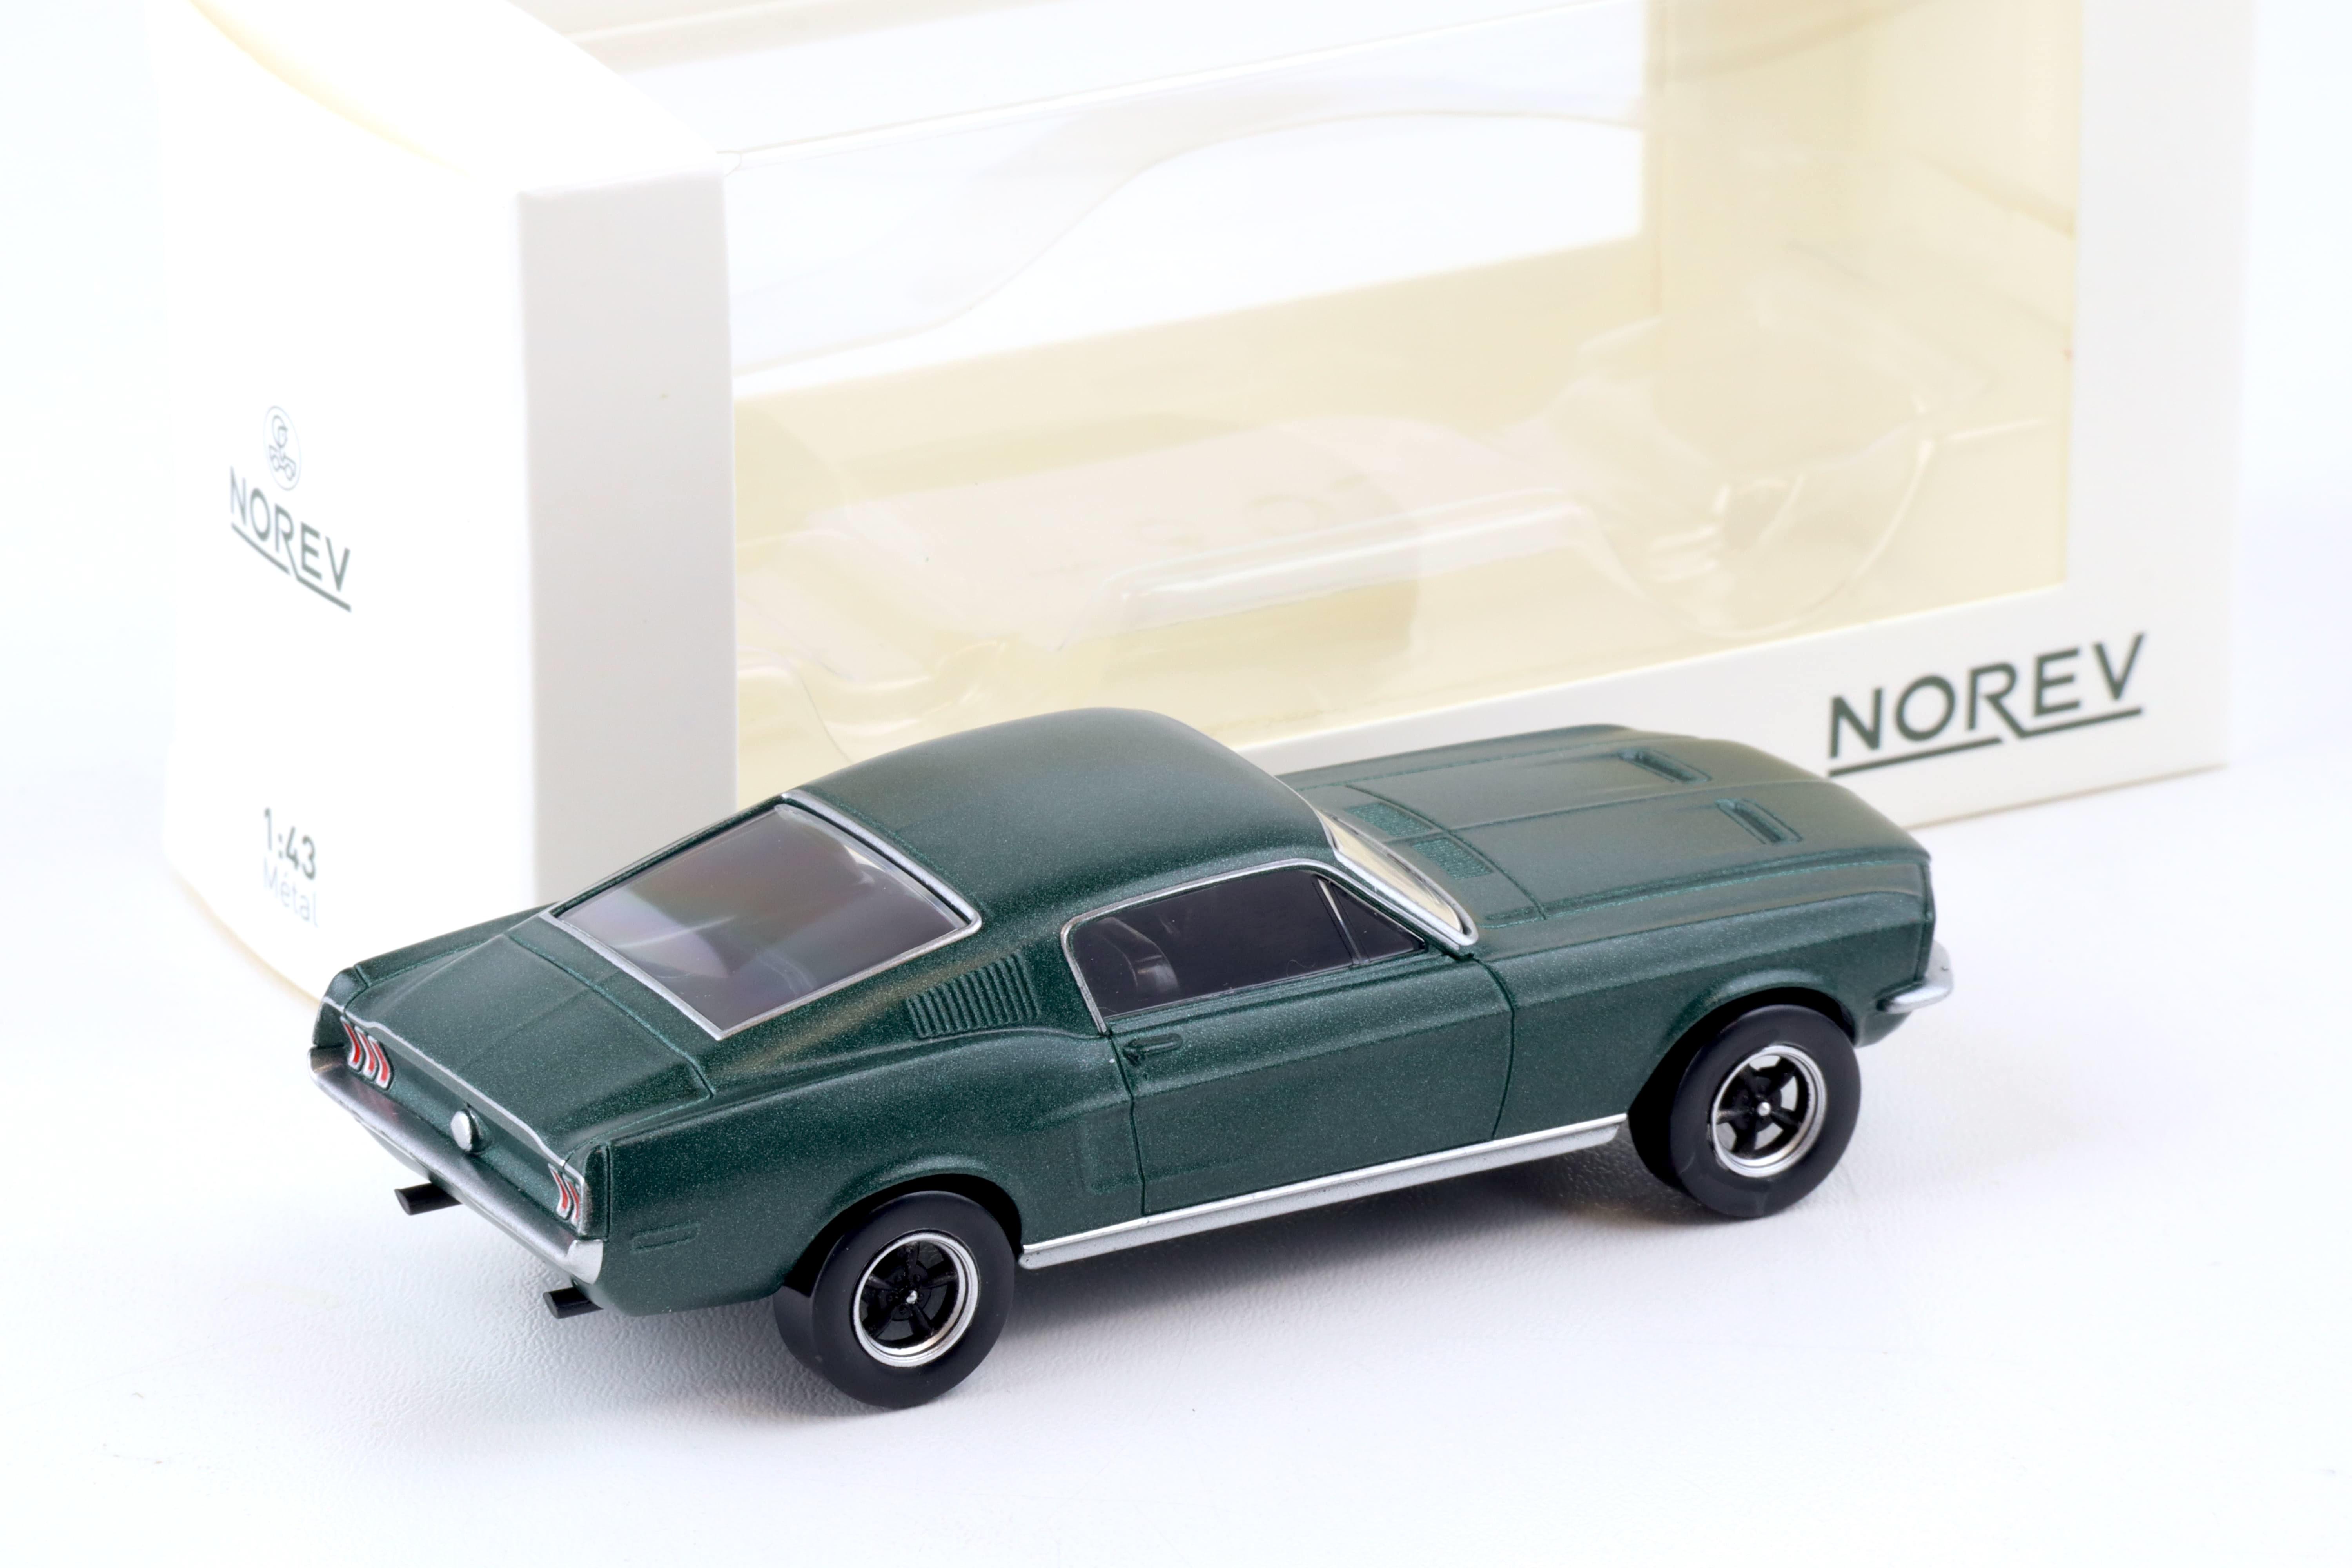 1:43 Norev Jet Car Ford Mustang Fastback 1968 Satin green metallic